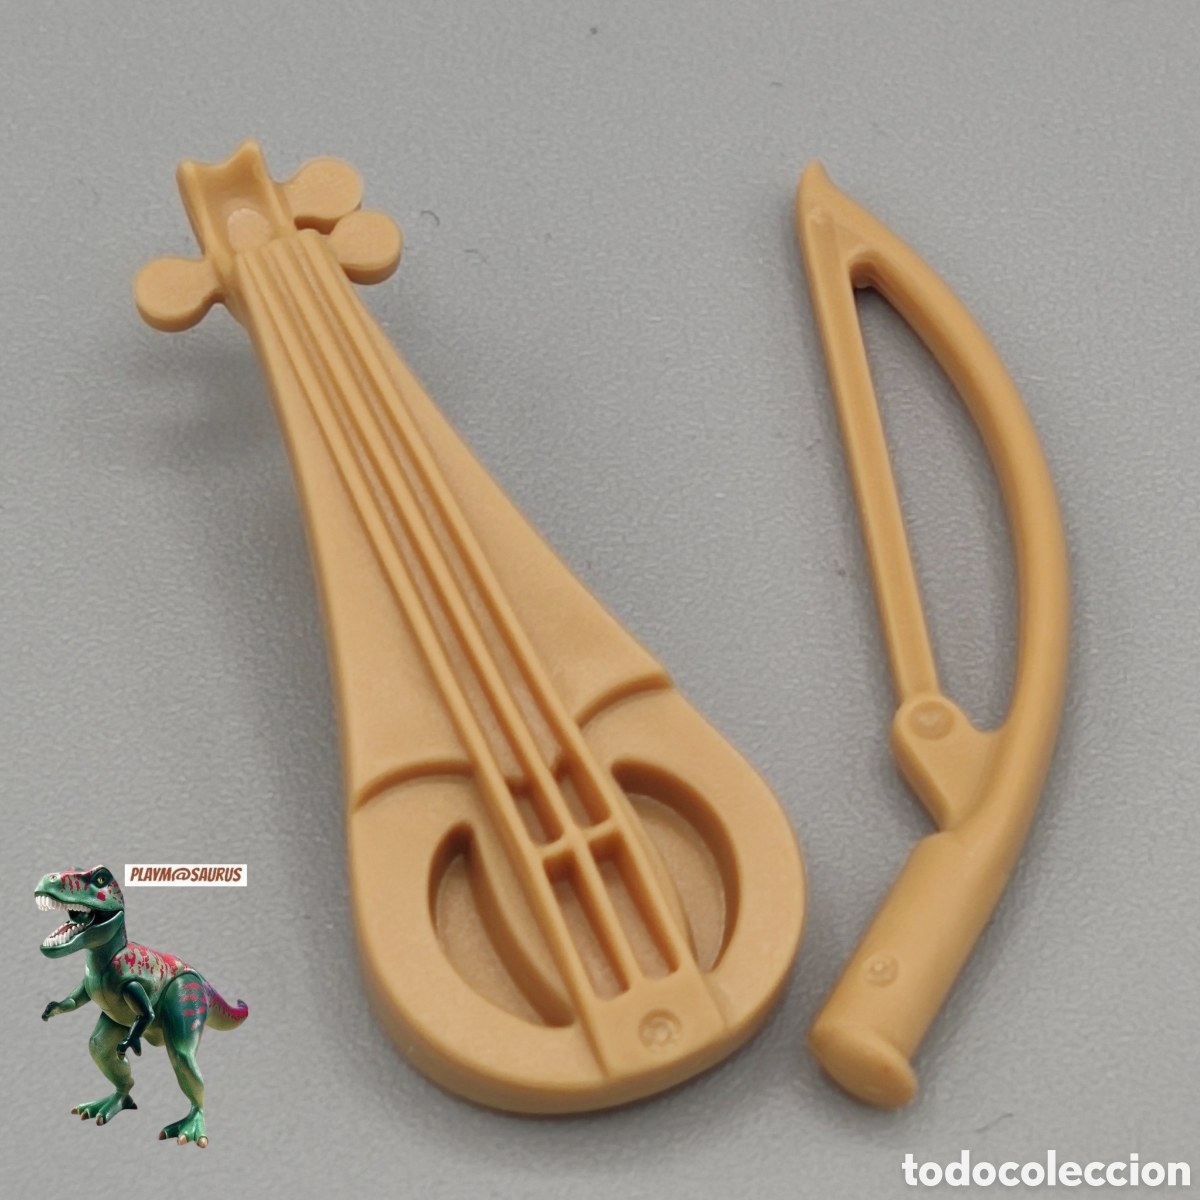 Playmobil® 30611242 Archet pour violon